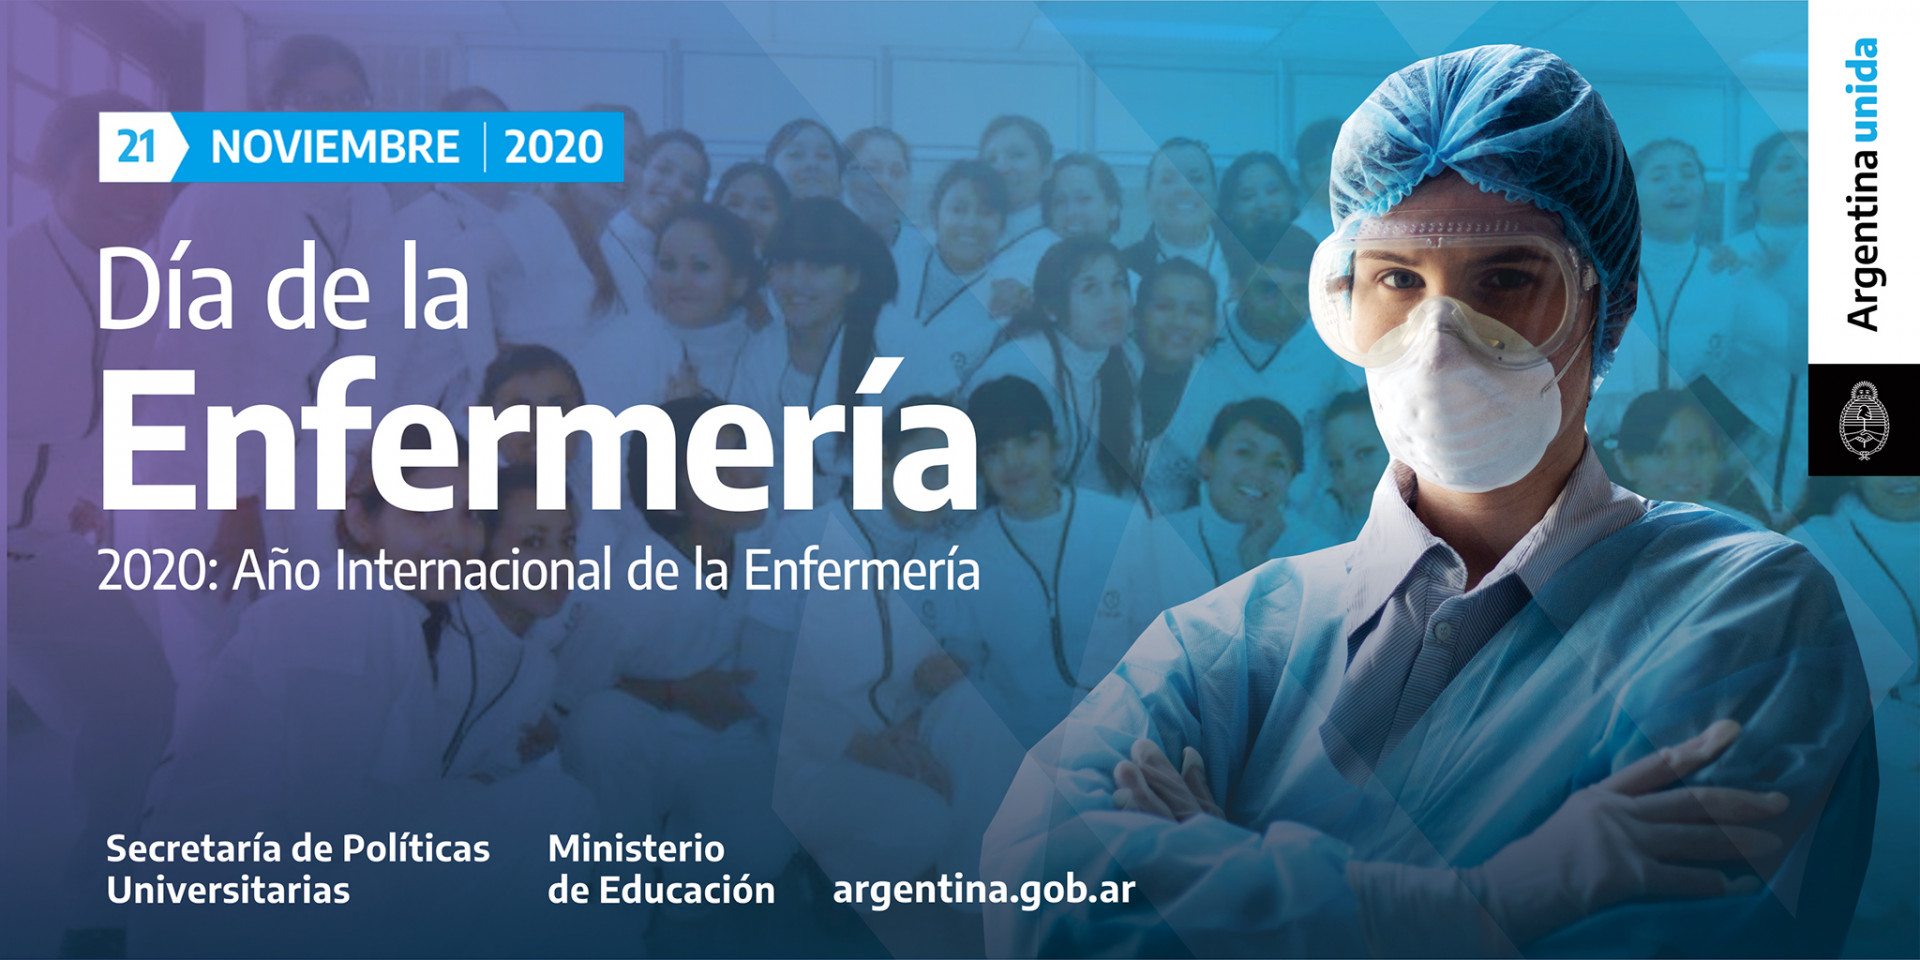 21 de noviembre Día de la Enfermería Argentina.gob.ar